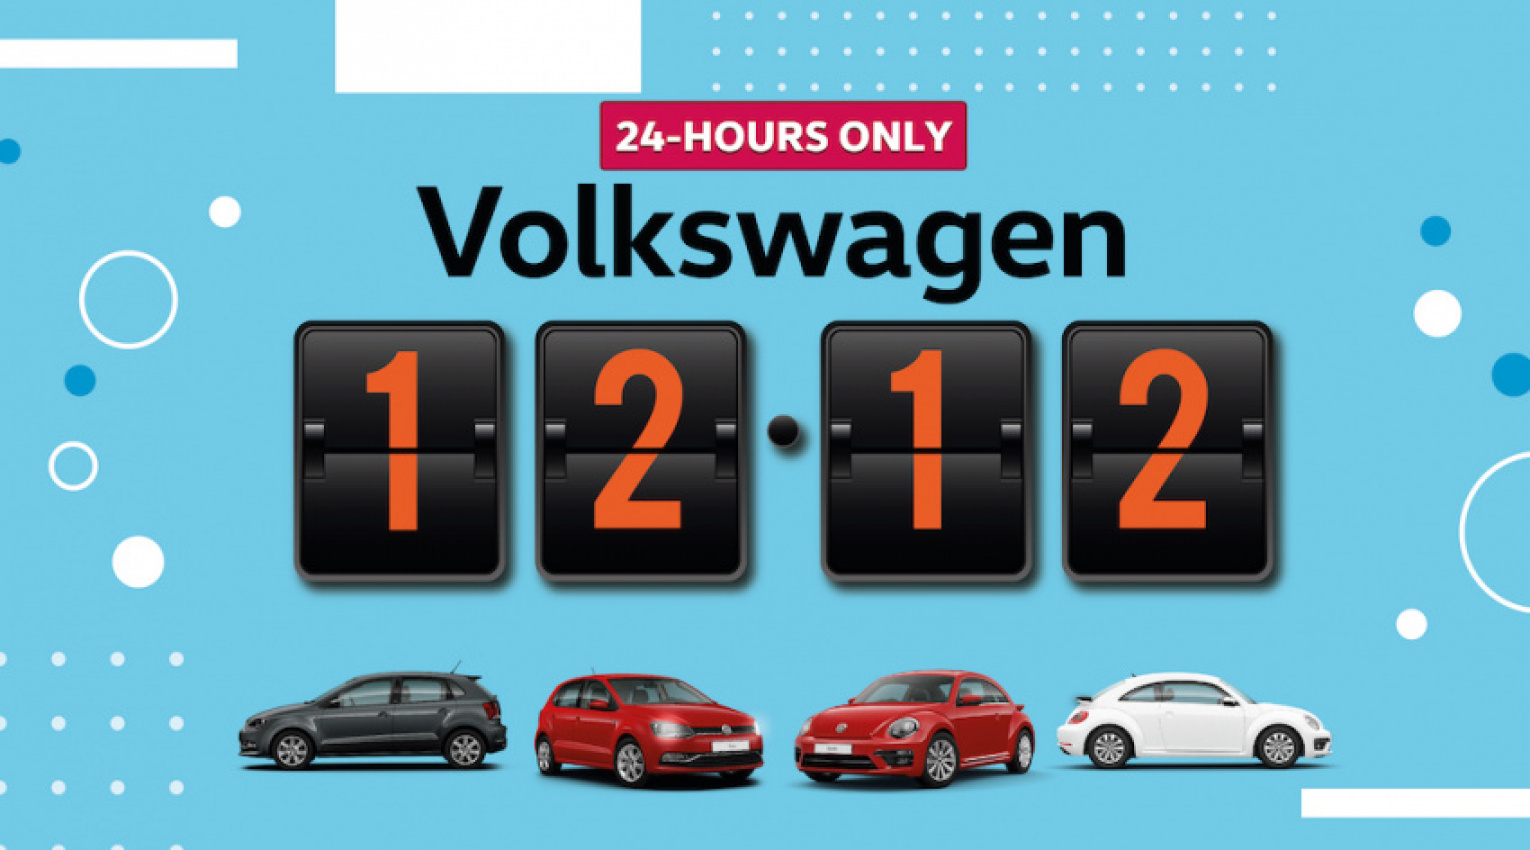 autos, cars, ram, volkswagen, autos volkswagen, volkswagen to sell polo and beetle via instagram